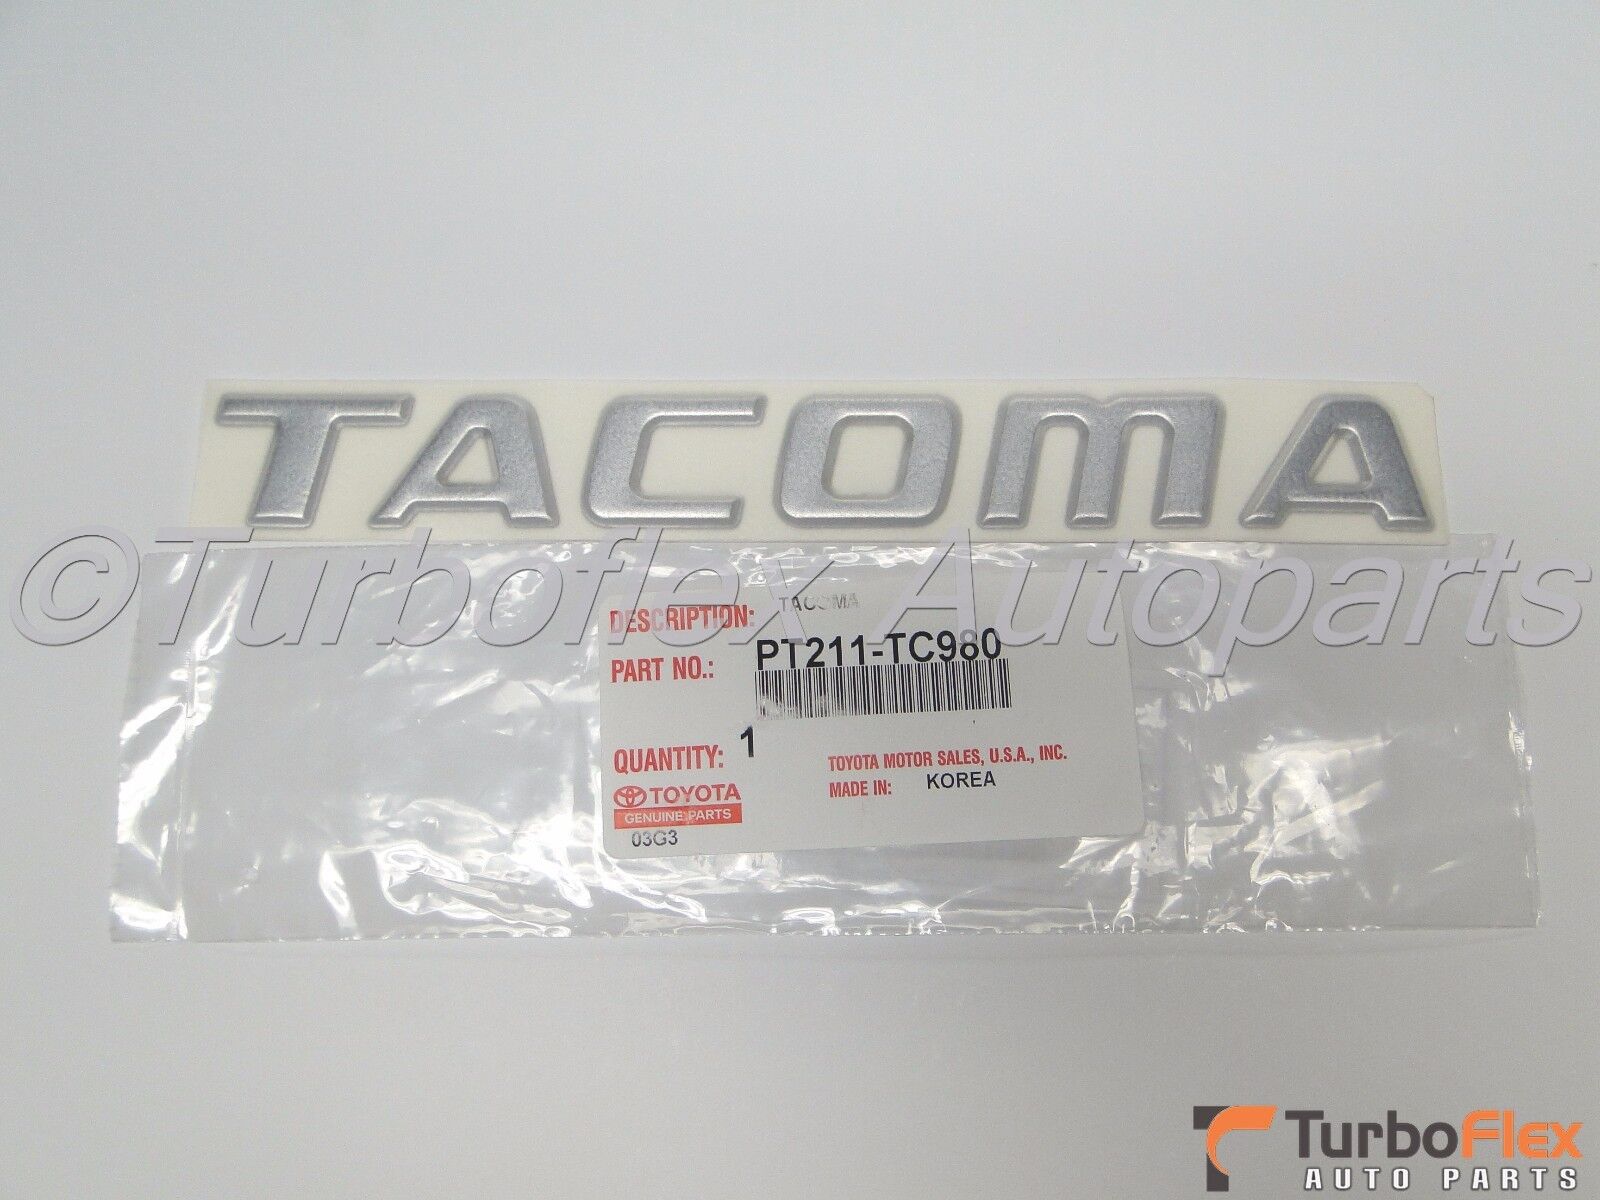 Toyota Tacoma 1998-2004 Tailgate TACOMA Chrome Emblem Genuine OEM   PT211-TC980 